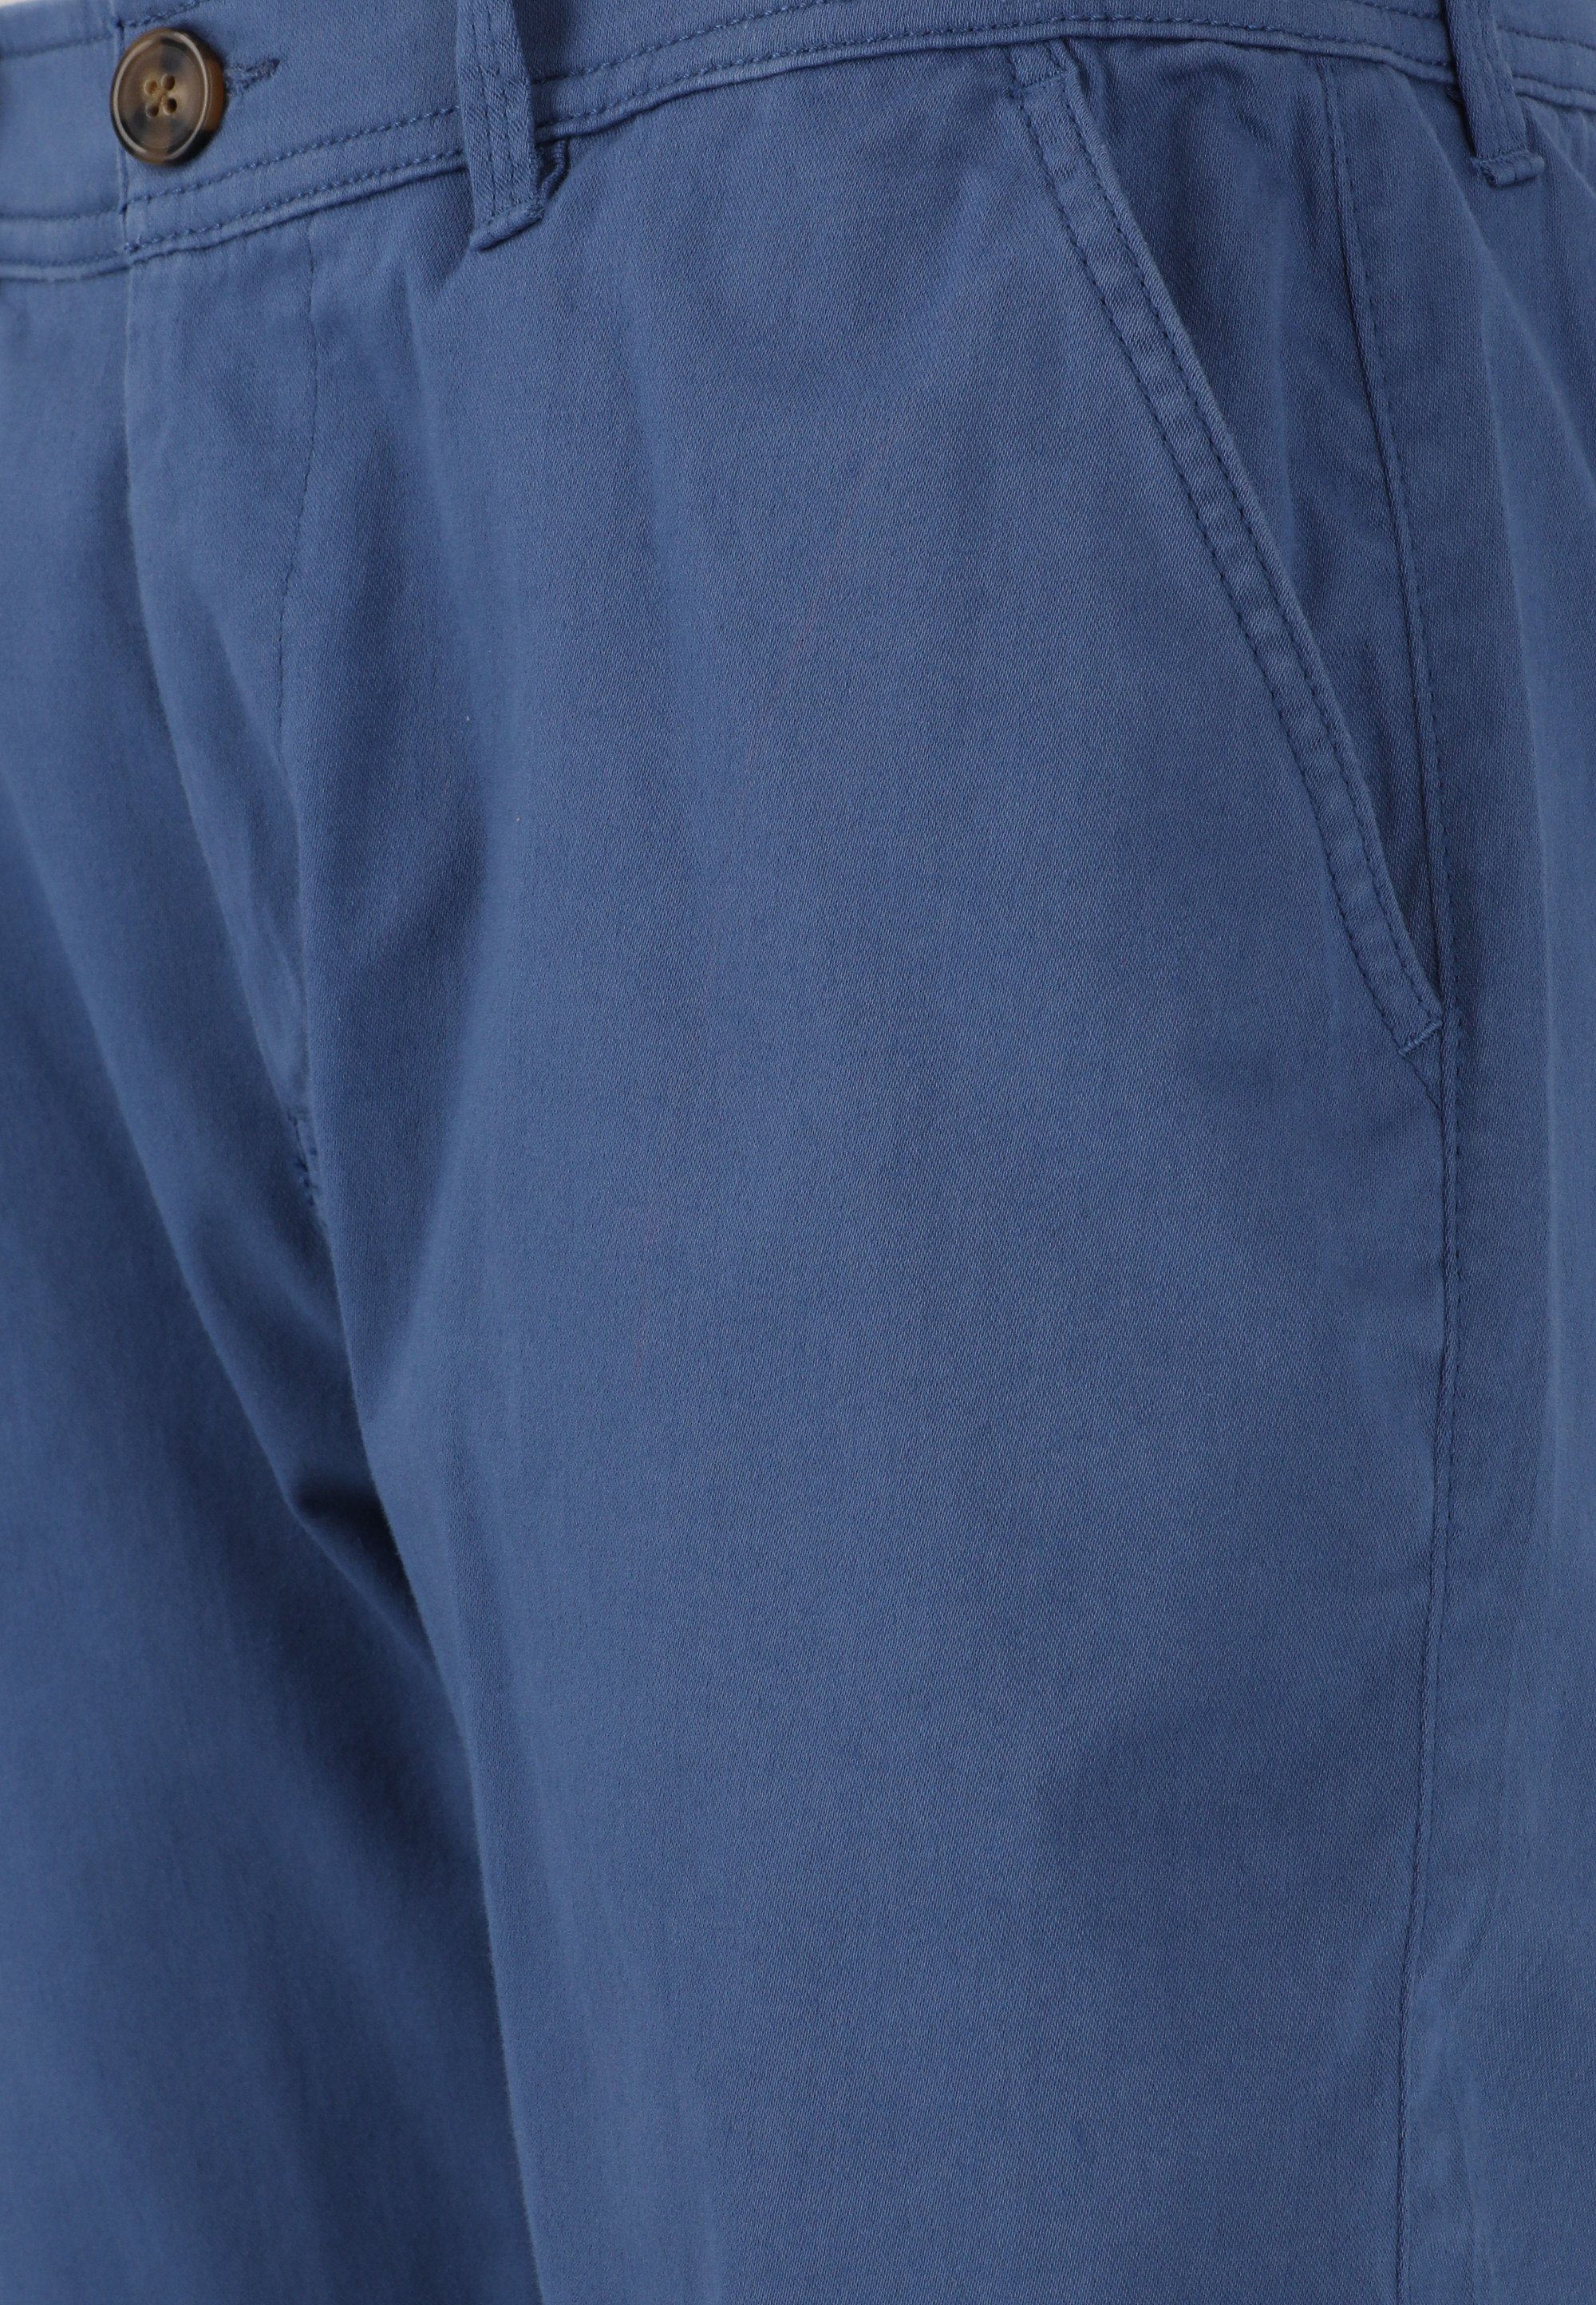 Shorts praktischen blau CRUZ mit Jerryne Seitentaschen